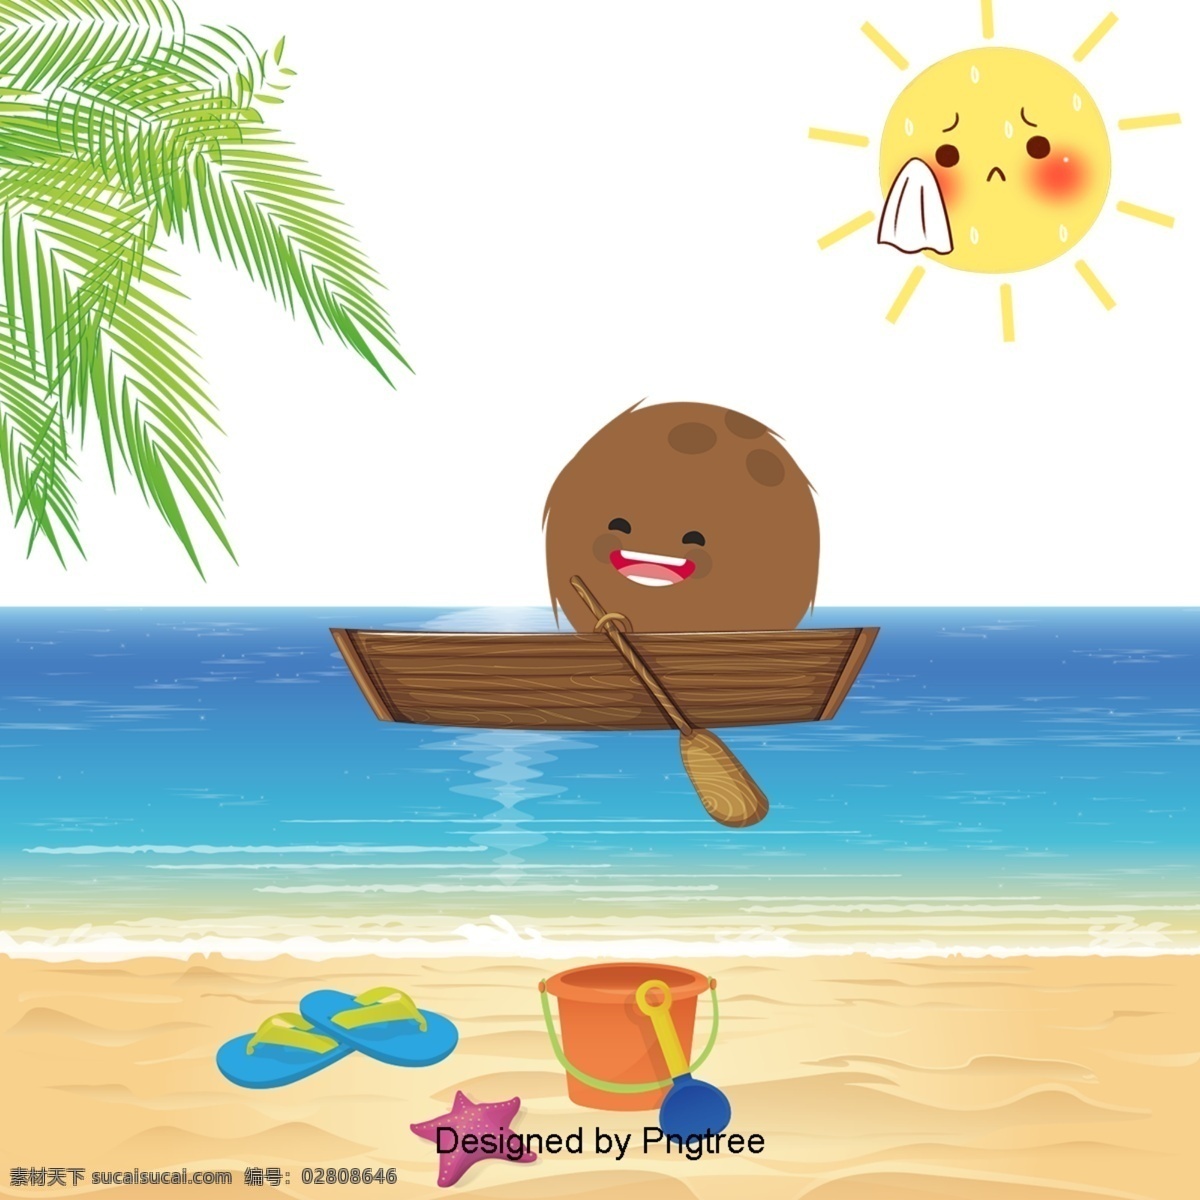 卡通 手绘 可爱 椰子 元素 海滩 海洋 夏天 椰子树 划船 太阳 装饰